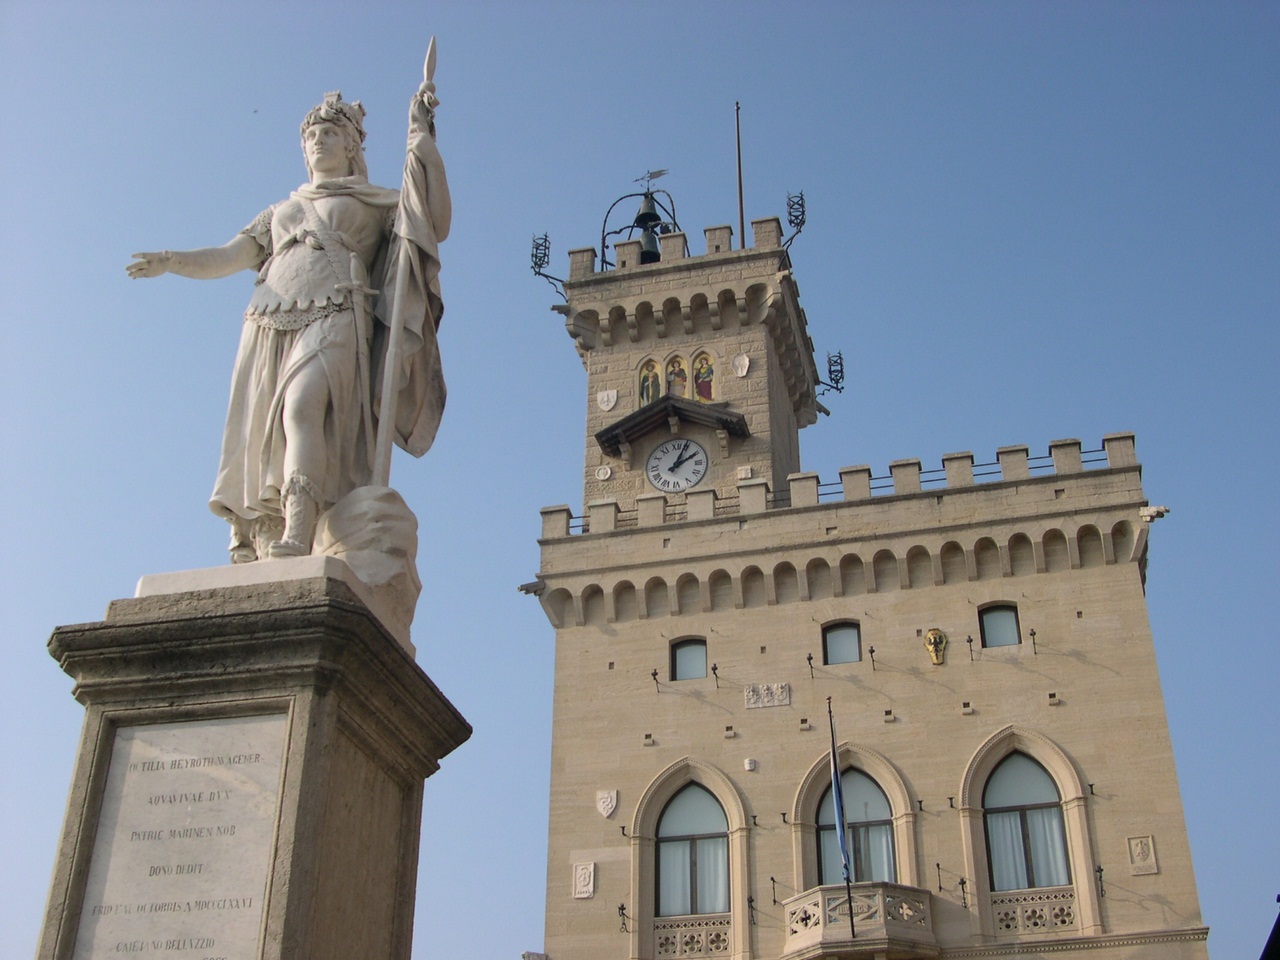 Canons, Guaita Tower, San Marino